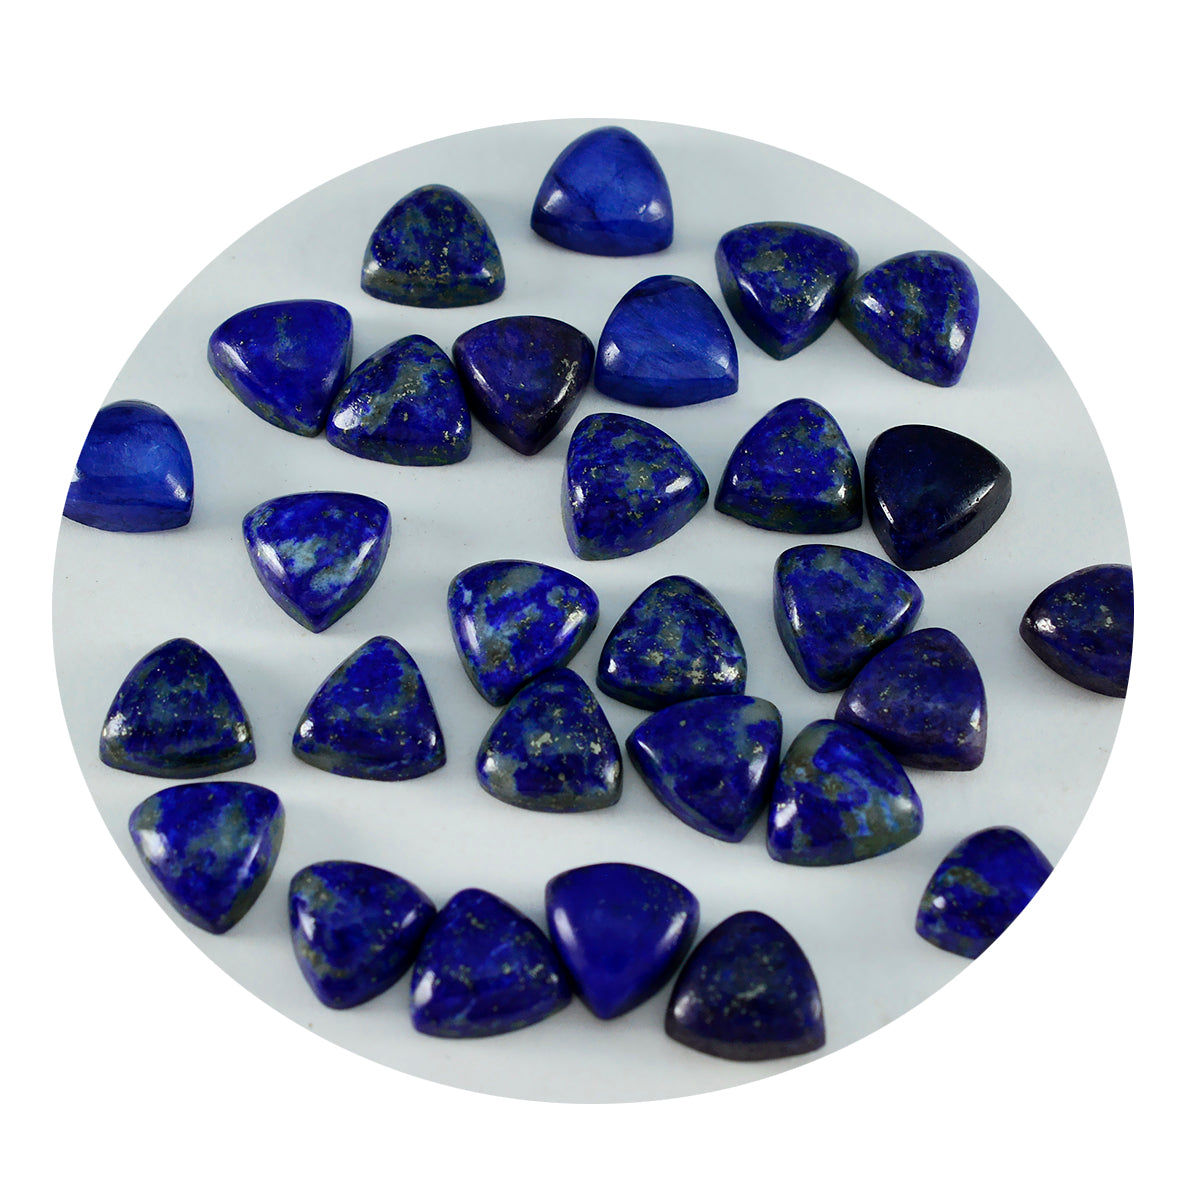 Riyogems 1 Stück blauer Lapislazuli-Cabochon, 7 x 7 mm, Billionenform, attraktiver, hochwertiger loser Stein